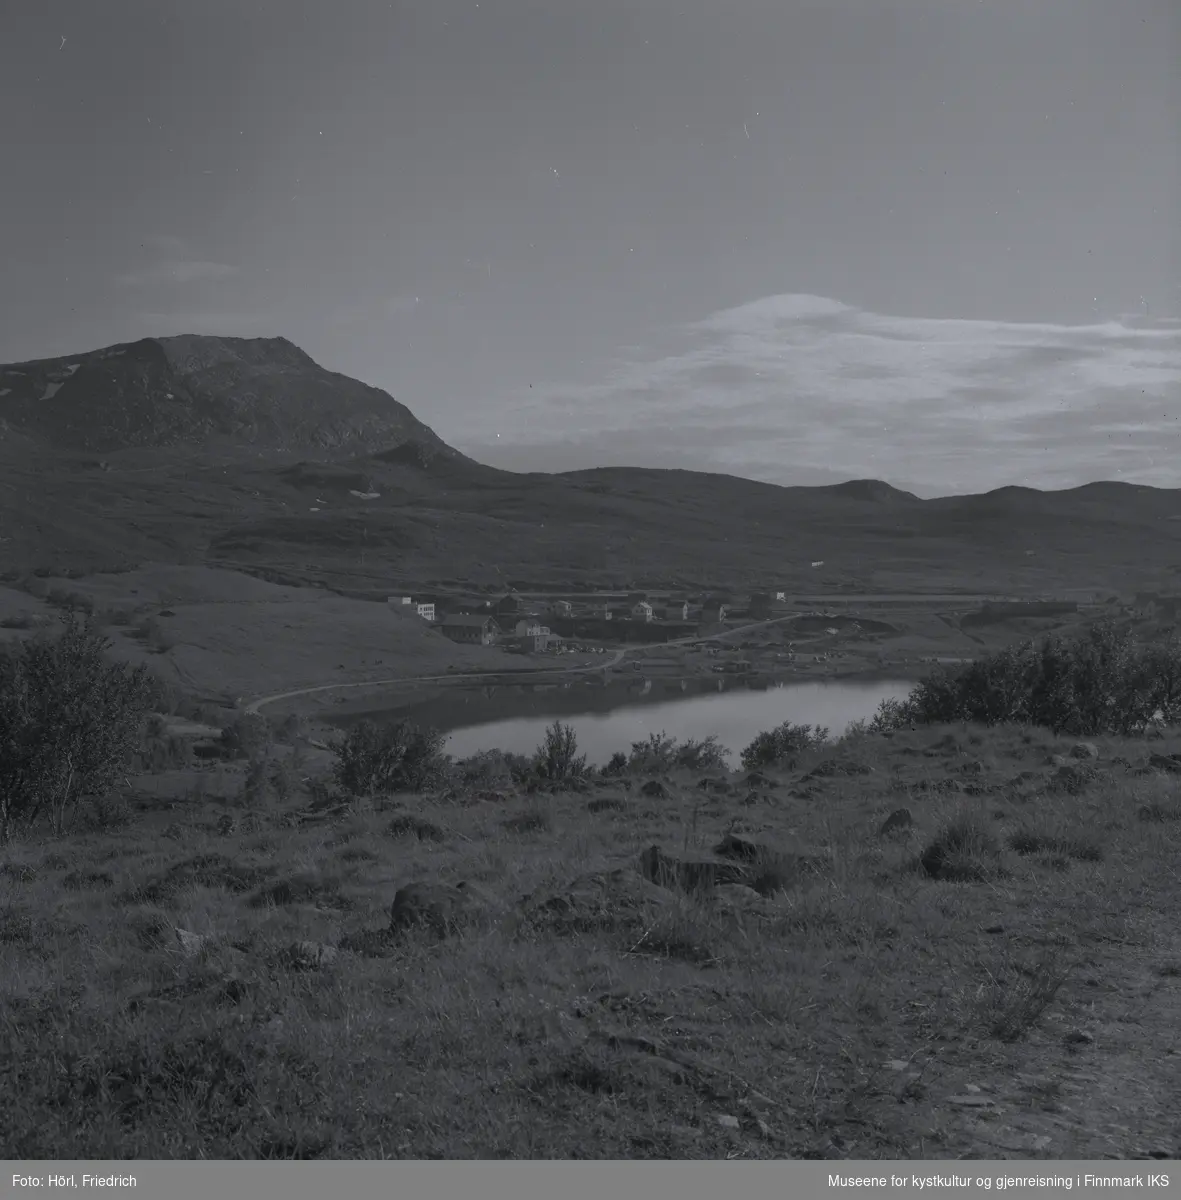 Storvannet i Hammerfest sett fra Kallandskogen. I midten av bildet ser man bebyggelsen rund munningen av elva, et området som kalles for "Tunnelbakken" og der elverket ligger. I bakgrunnen til venstre ser man Tyven fjellet.